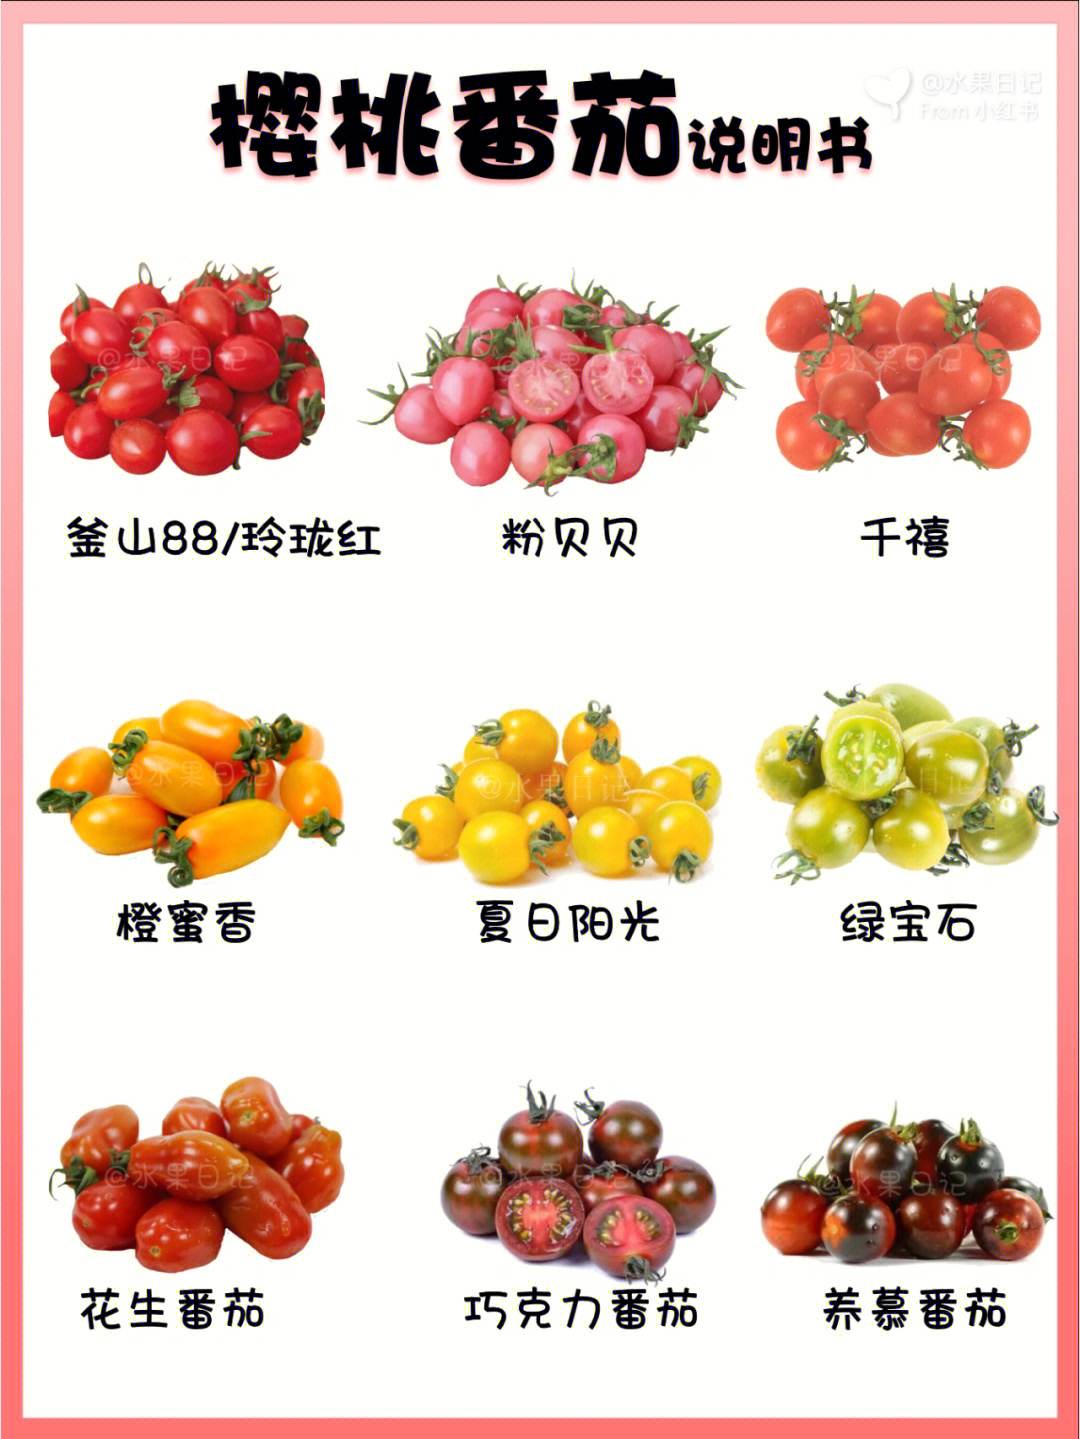 千禧釜山88玲珑圣女果等都是樱桃番茄